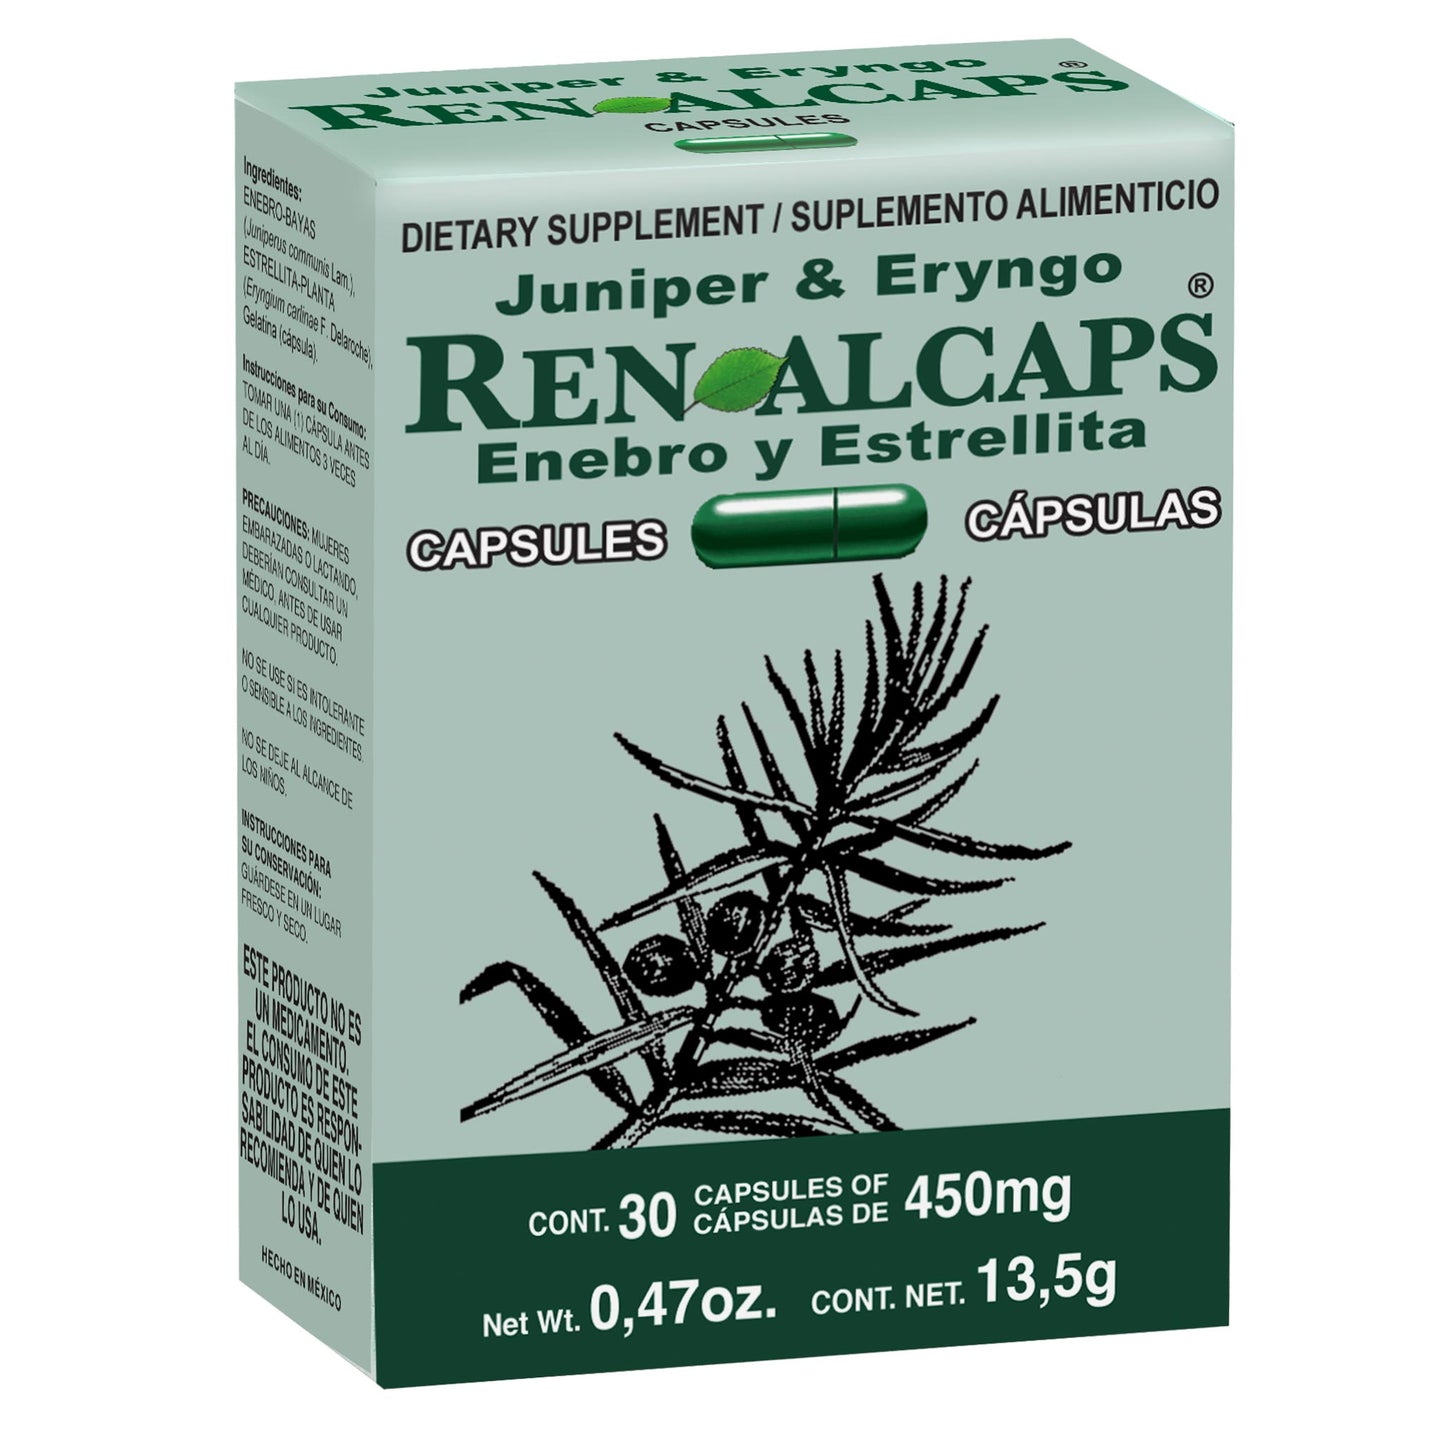 Cápsulas RENALCAPS ® enebro y estrellita caja blister 30u